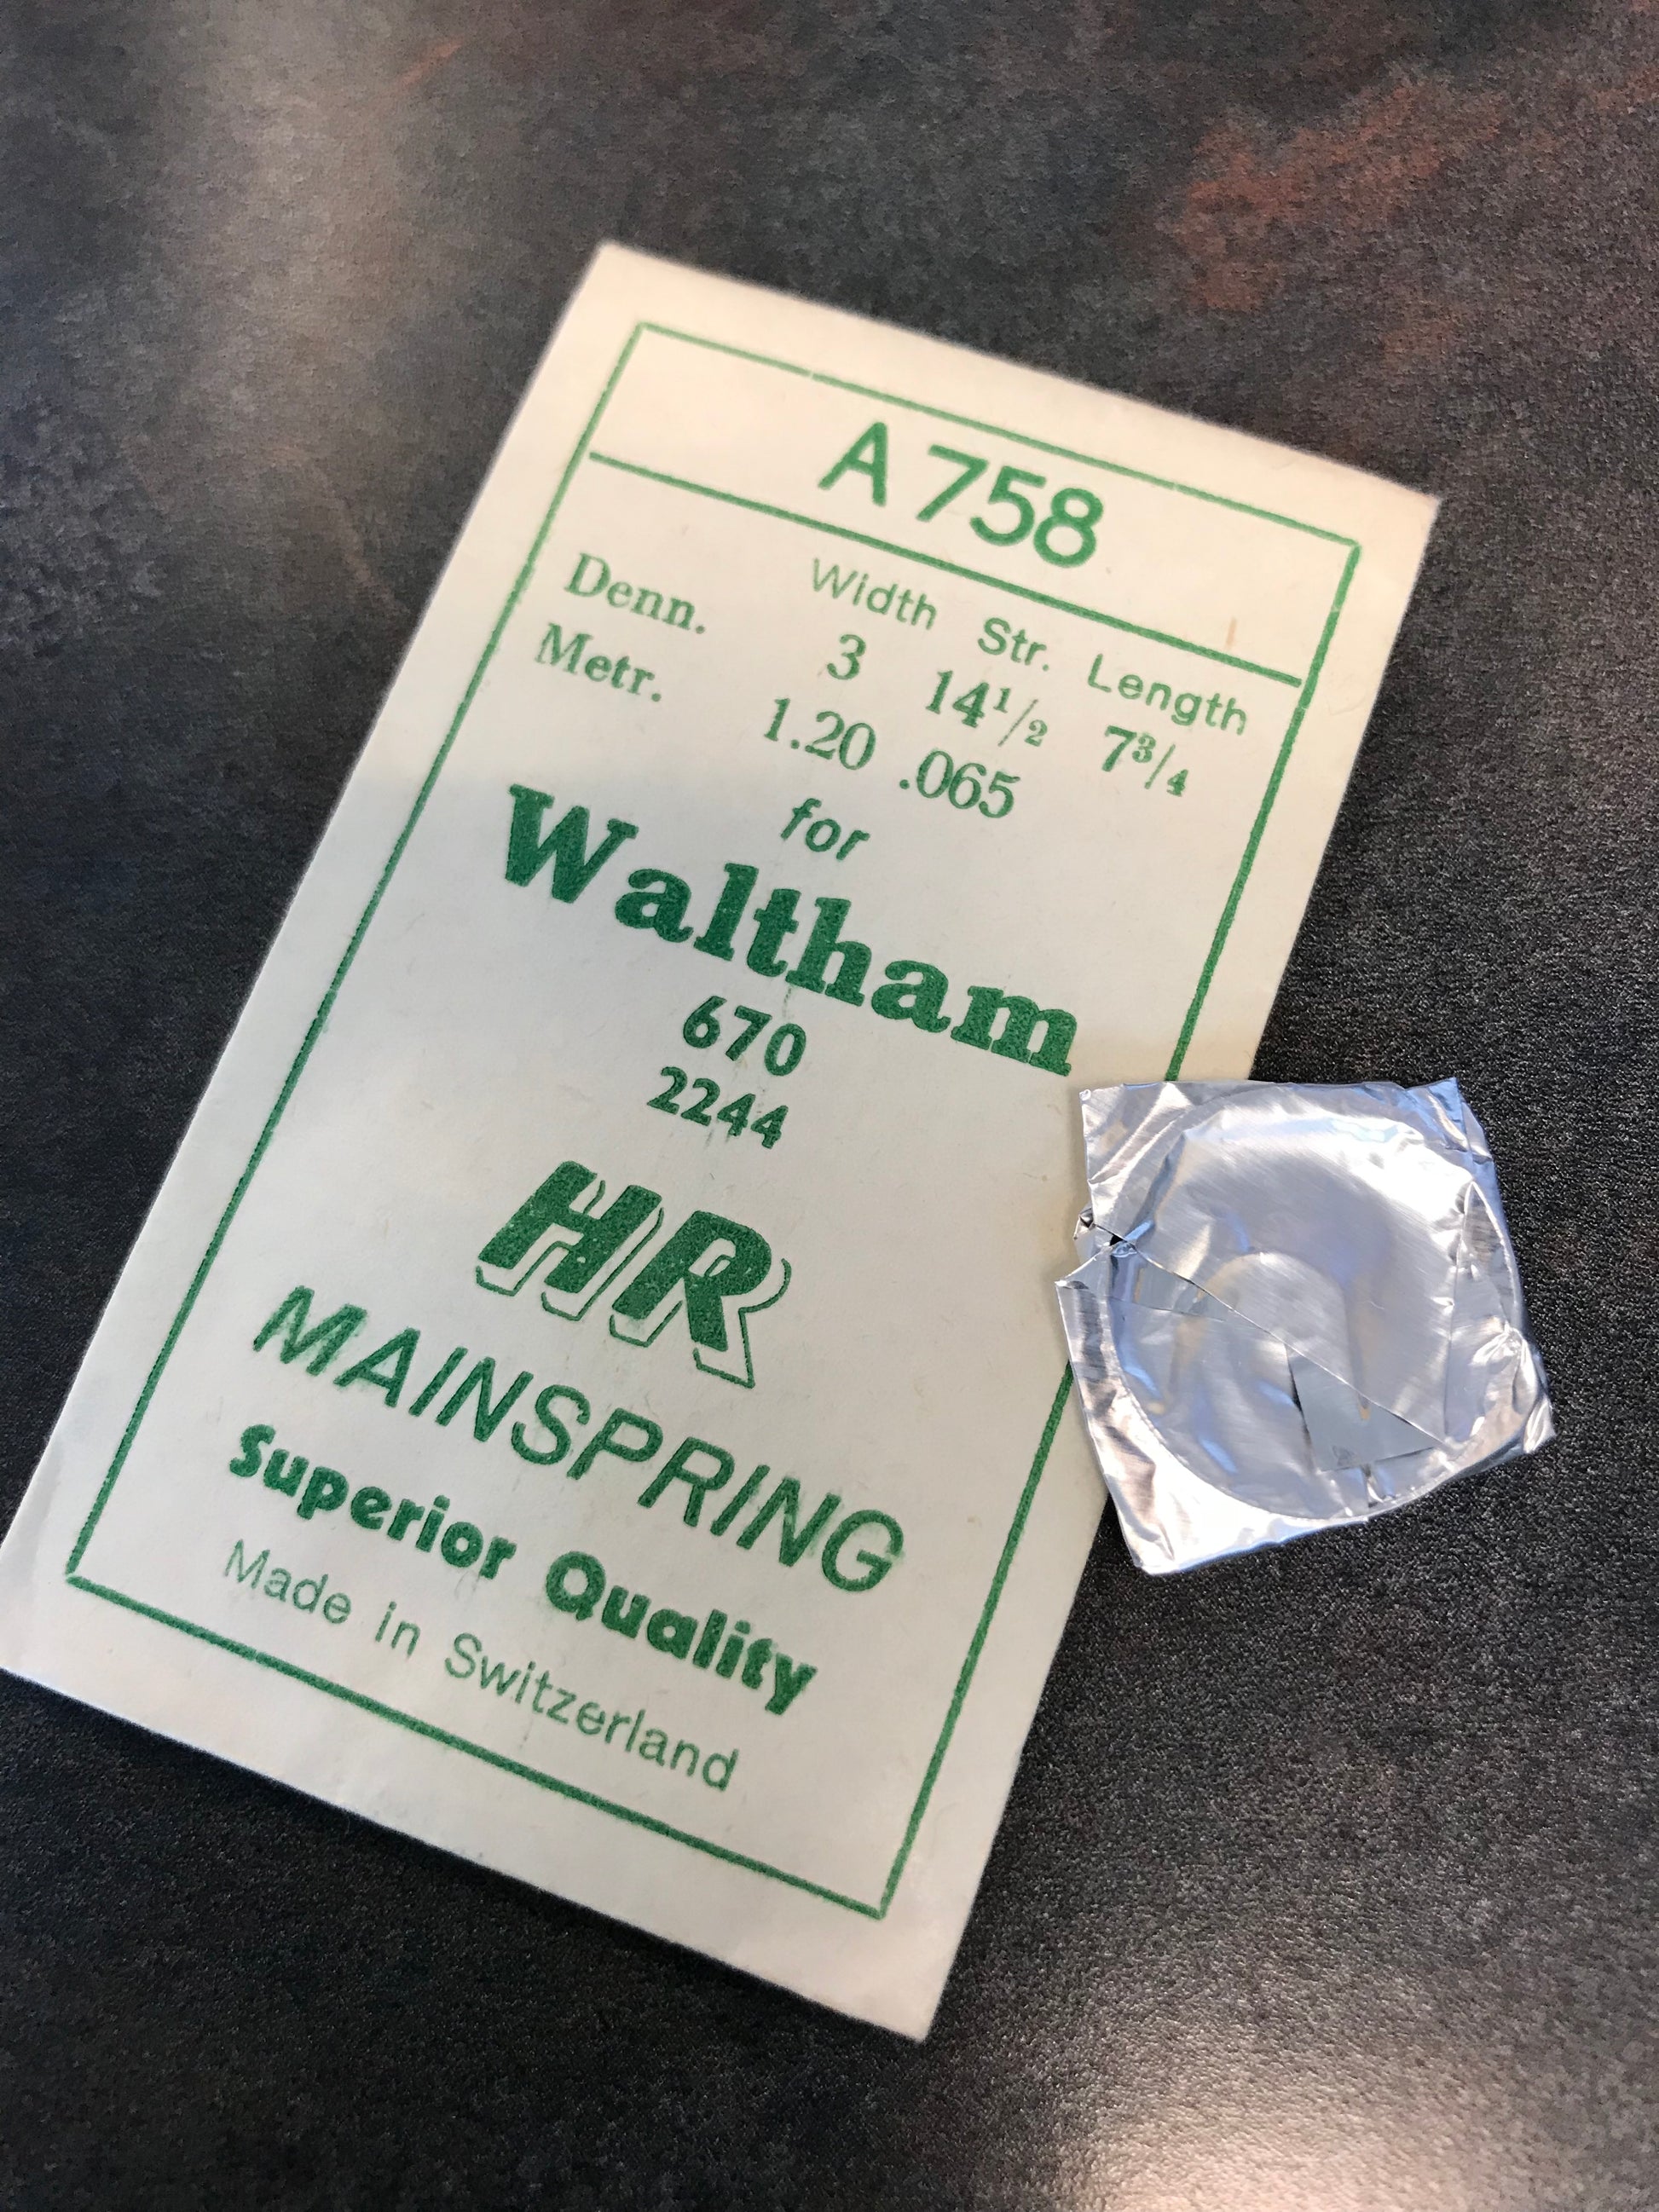 HR Mainspring A758 for Waltham 6¾ Ligne Model 670 #2244 - Steel